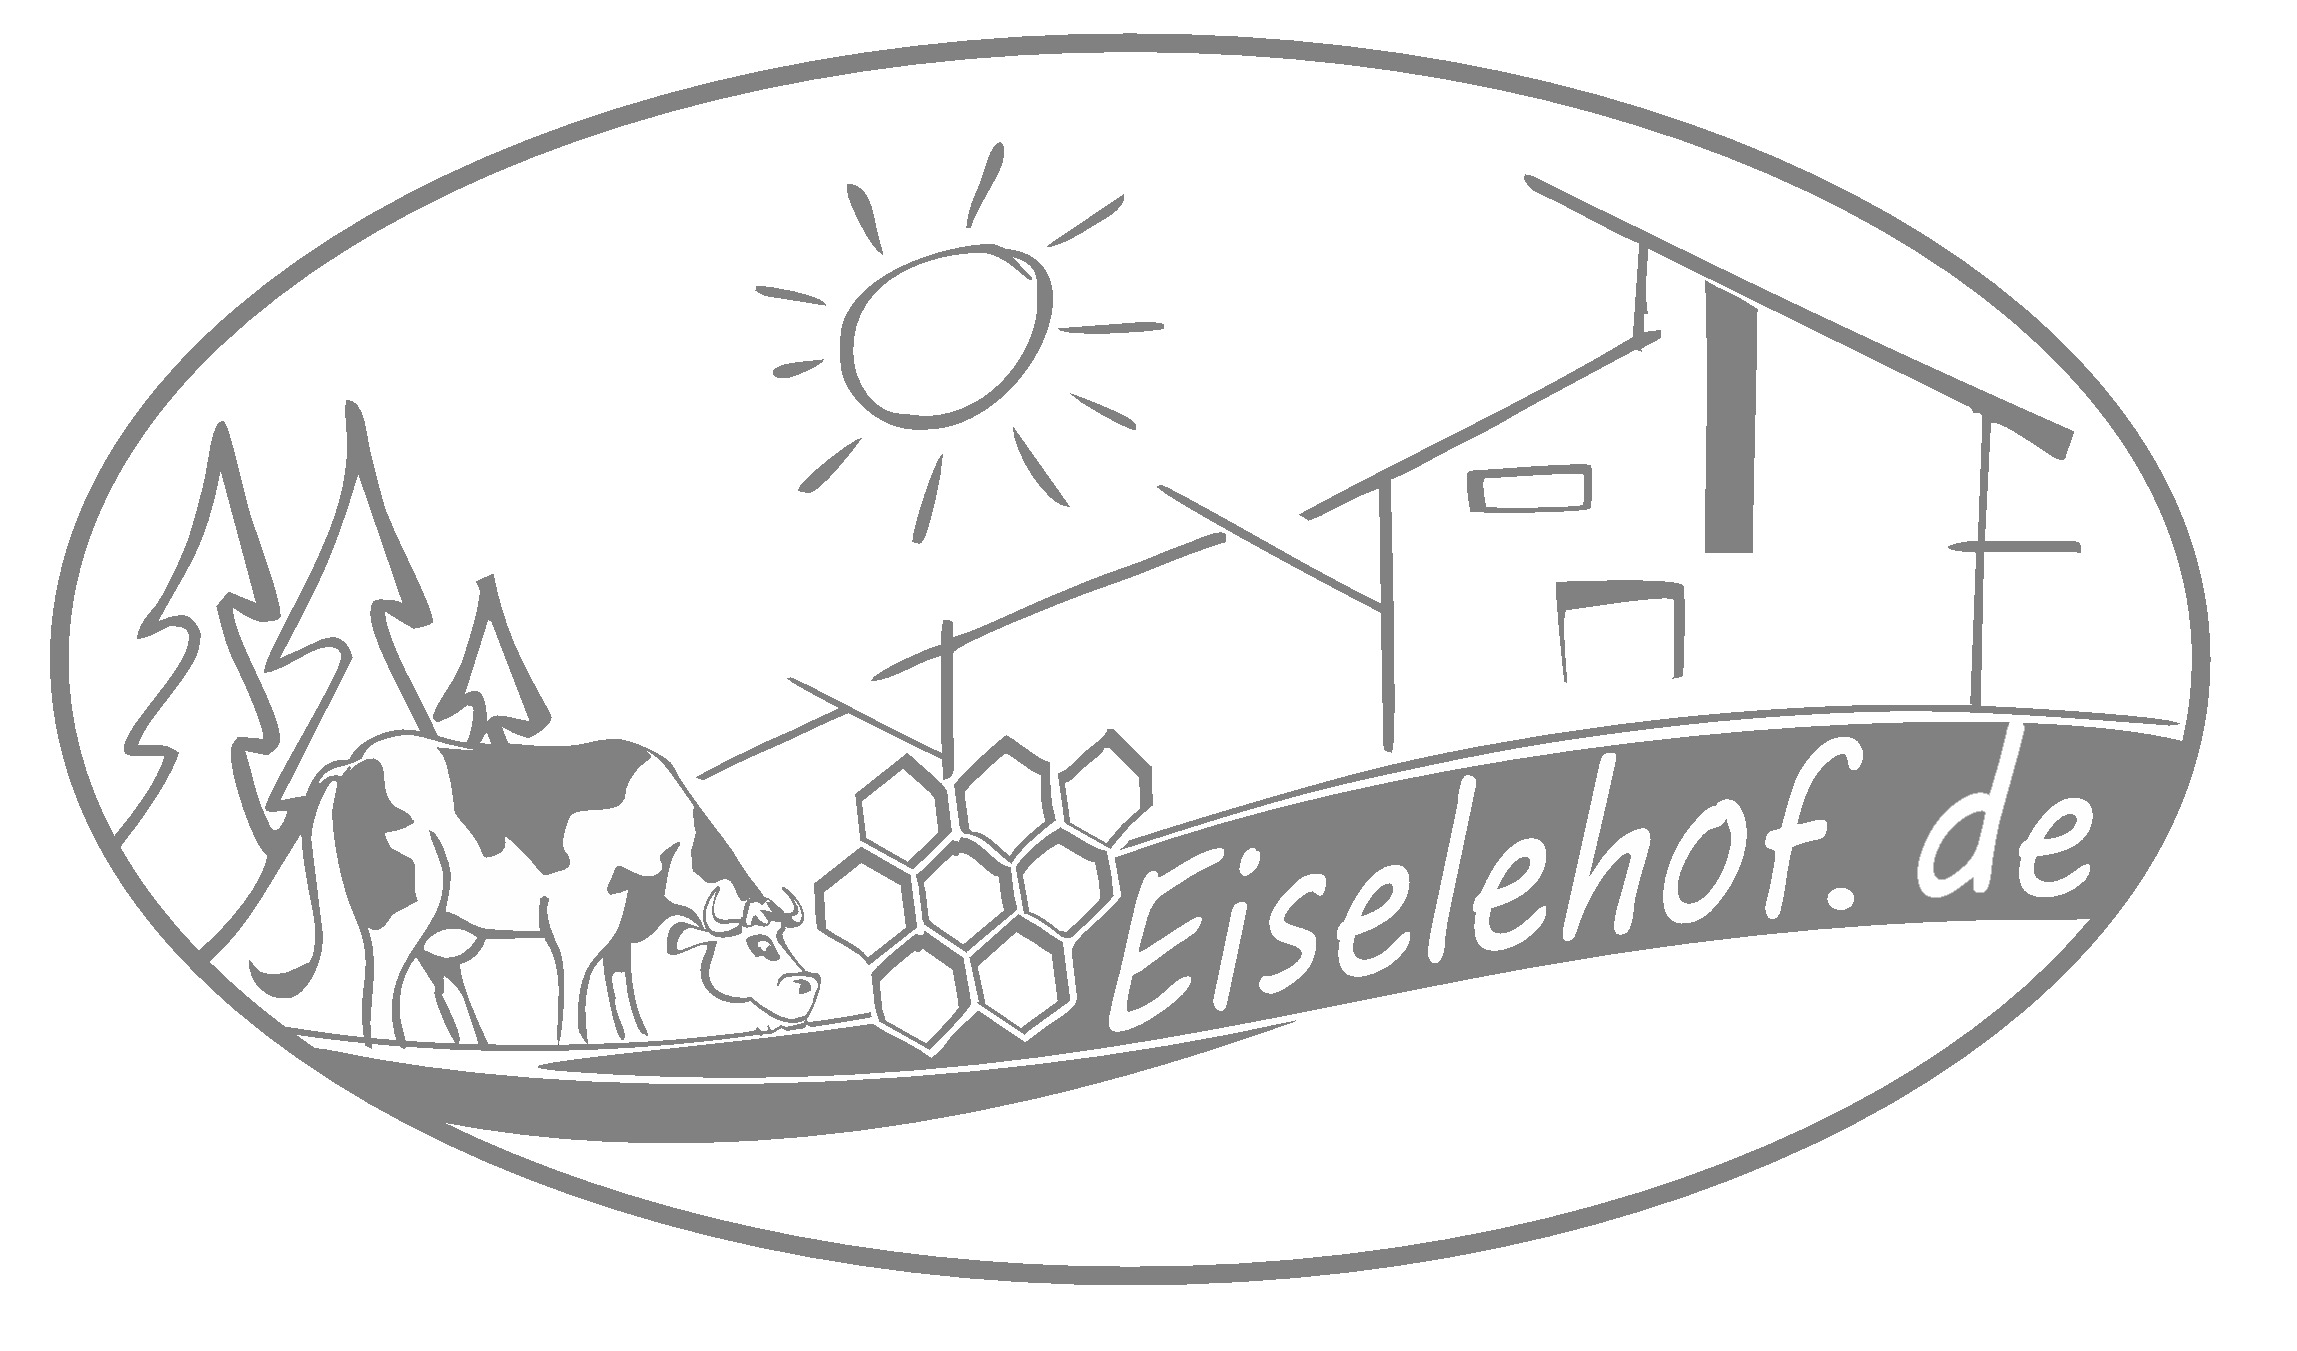 Eiselehof